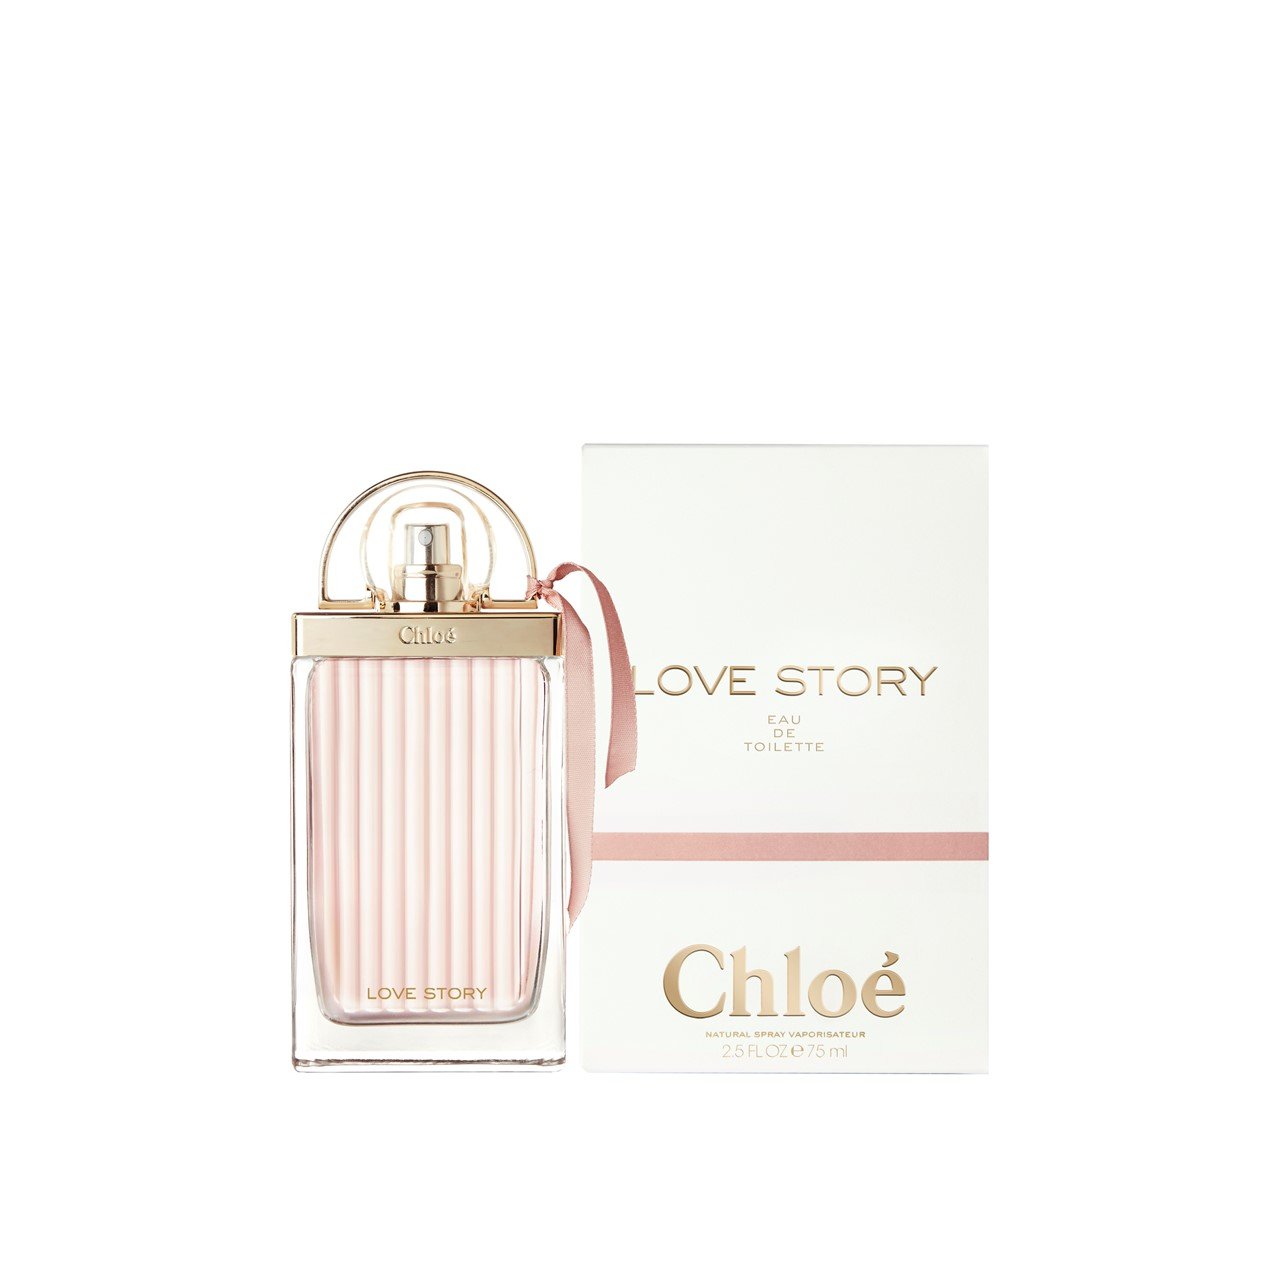 Chloé Love Story Eau de Toilette 75ml (2.5fl oz)